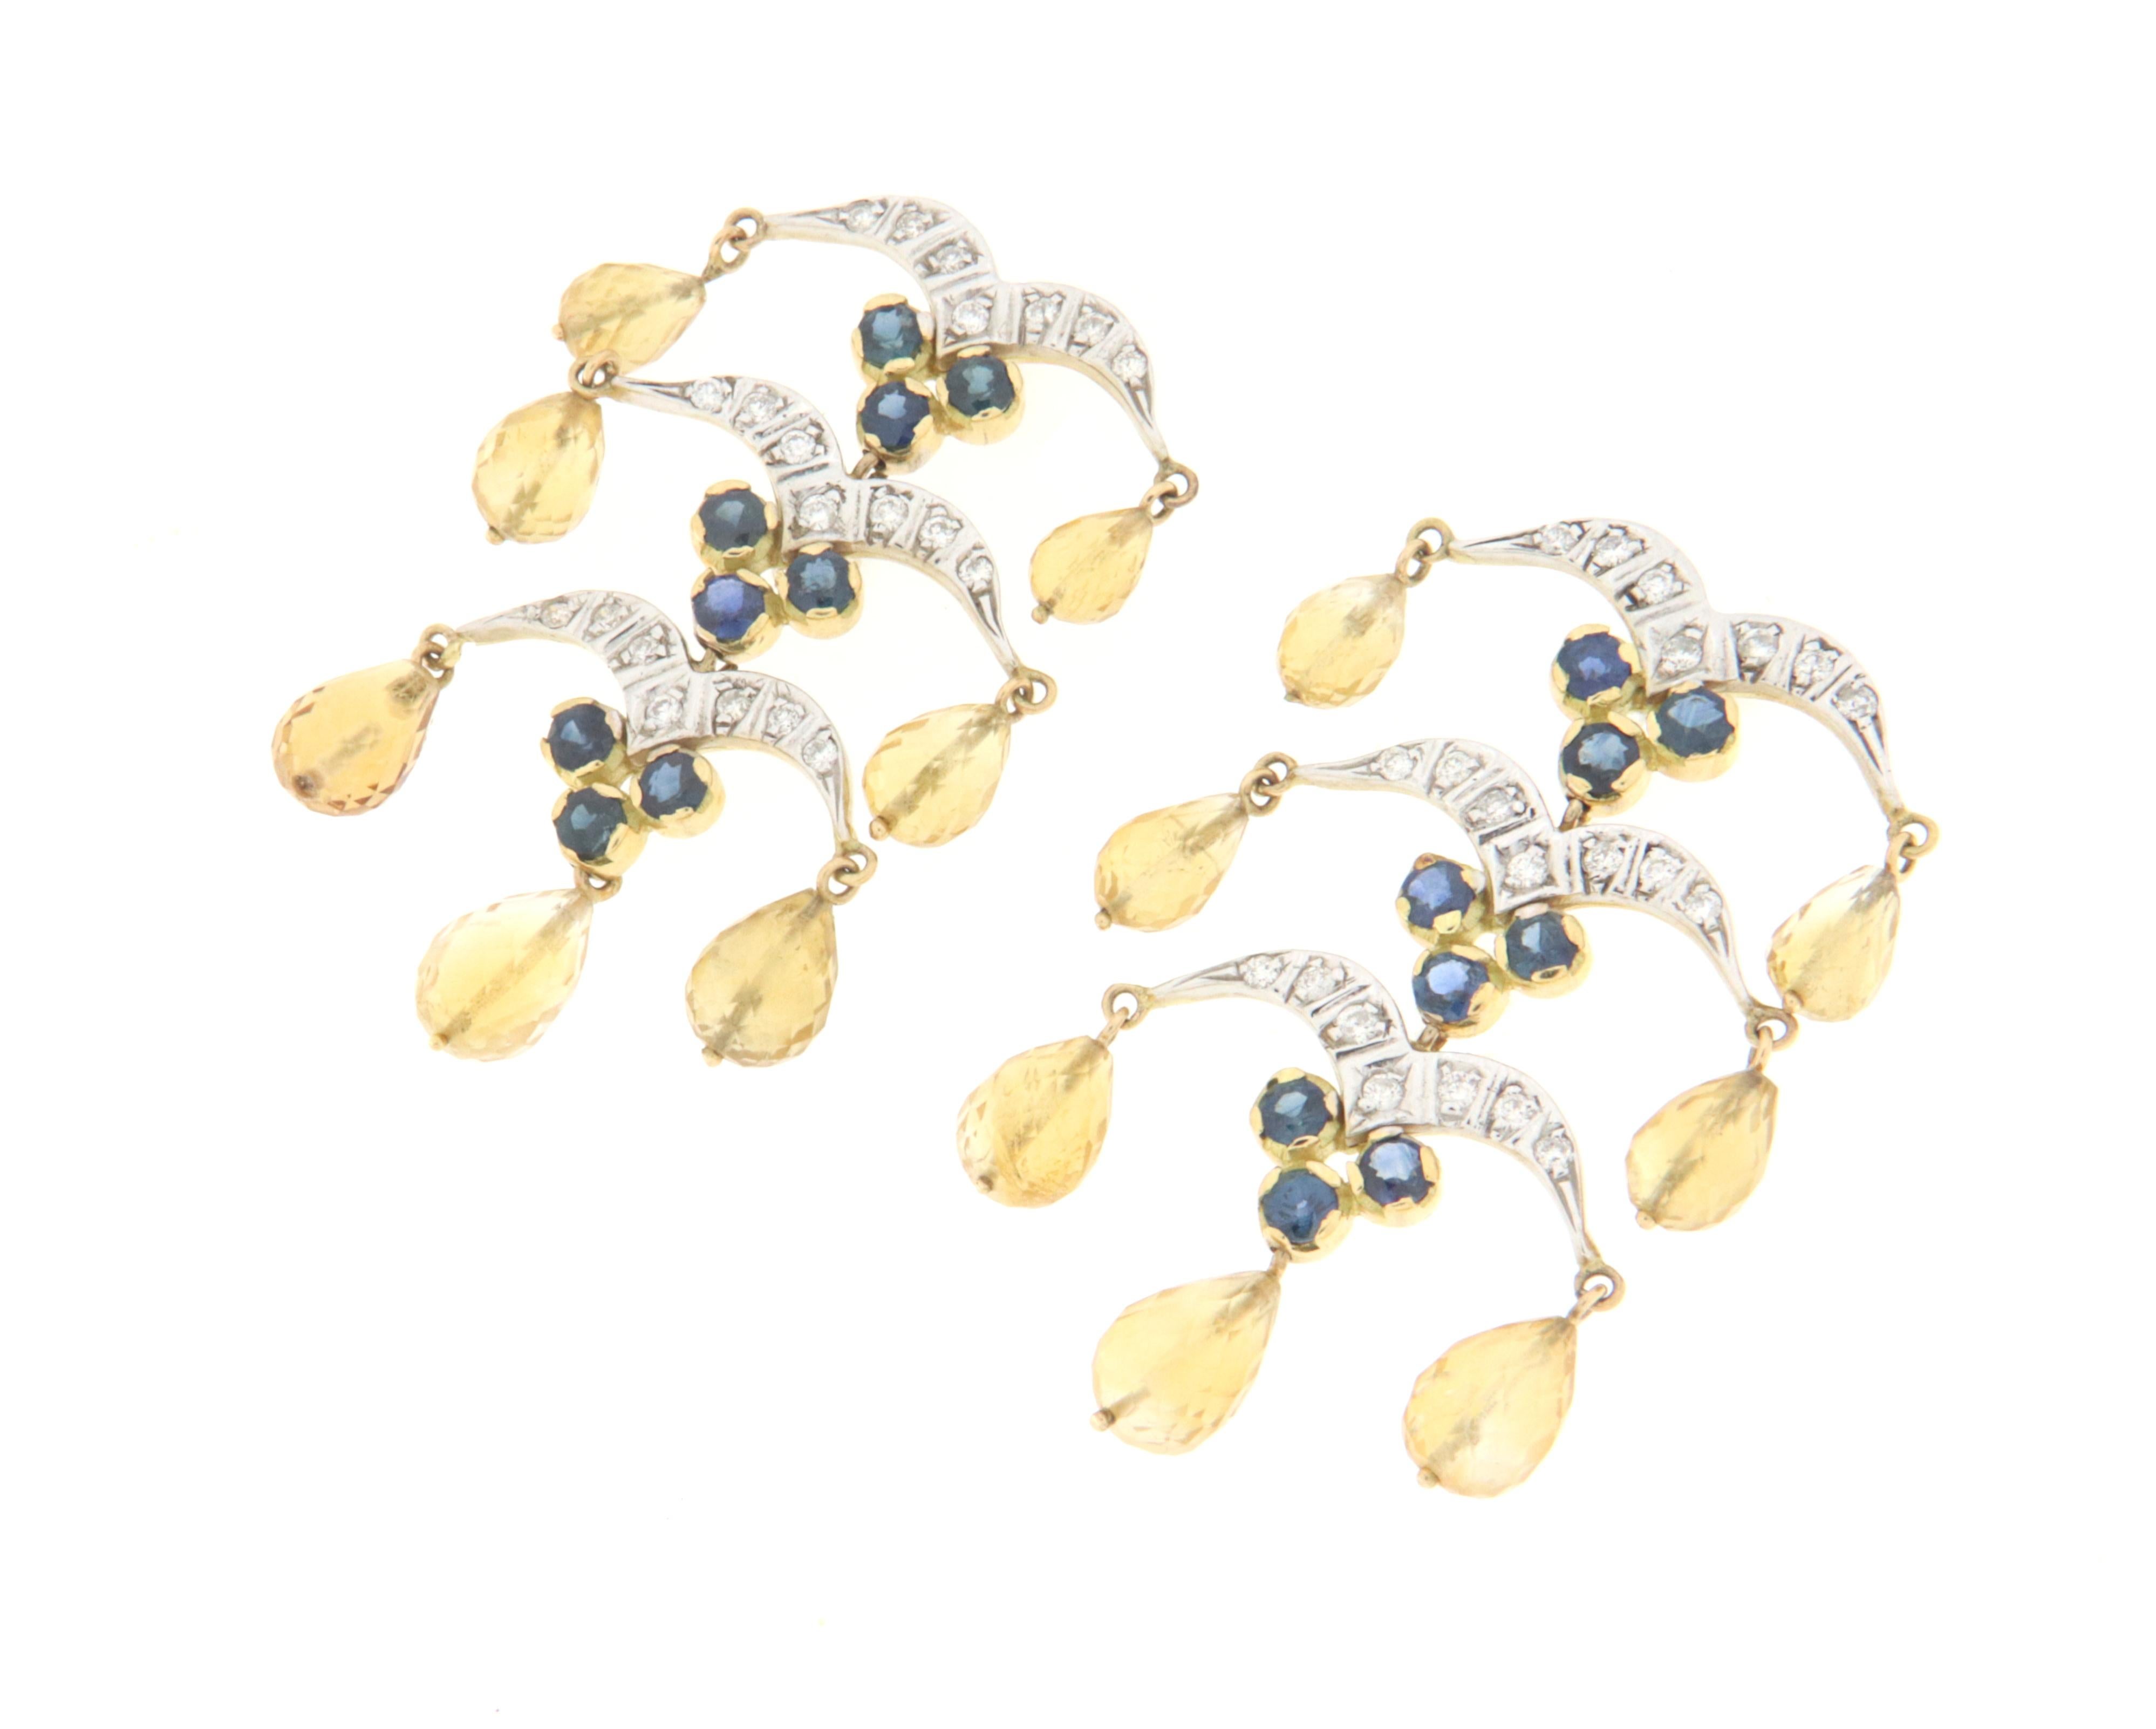 Eleganter Ohrring, vollständig von Hand aus 18 Karat Weiß- und Gelbgold gefertigt, besetzt mit Saphiren, Diamanten und birnenförmigen Anhängern aus facettiertem gelbem Citrin.
Ein Jewell, das auf das Läppchen einer Frau wirkt, das zu jeder Art von